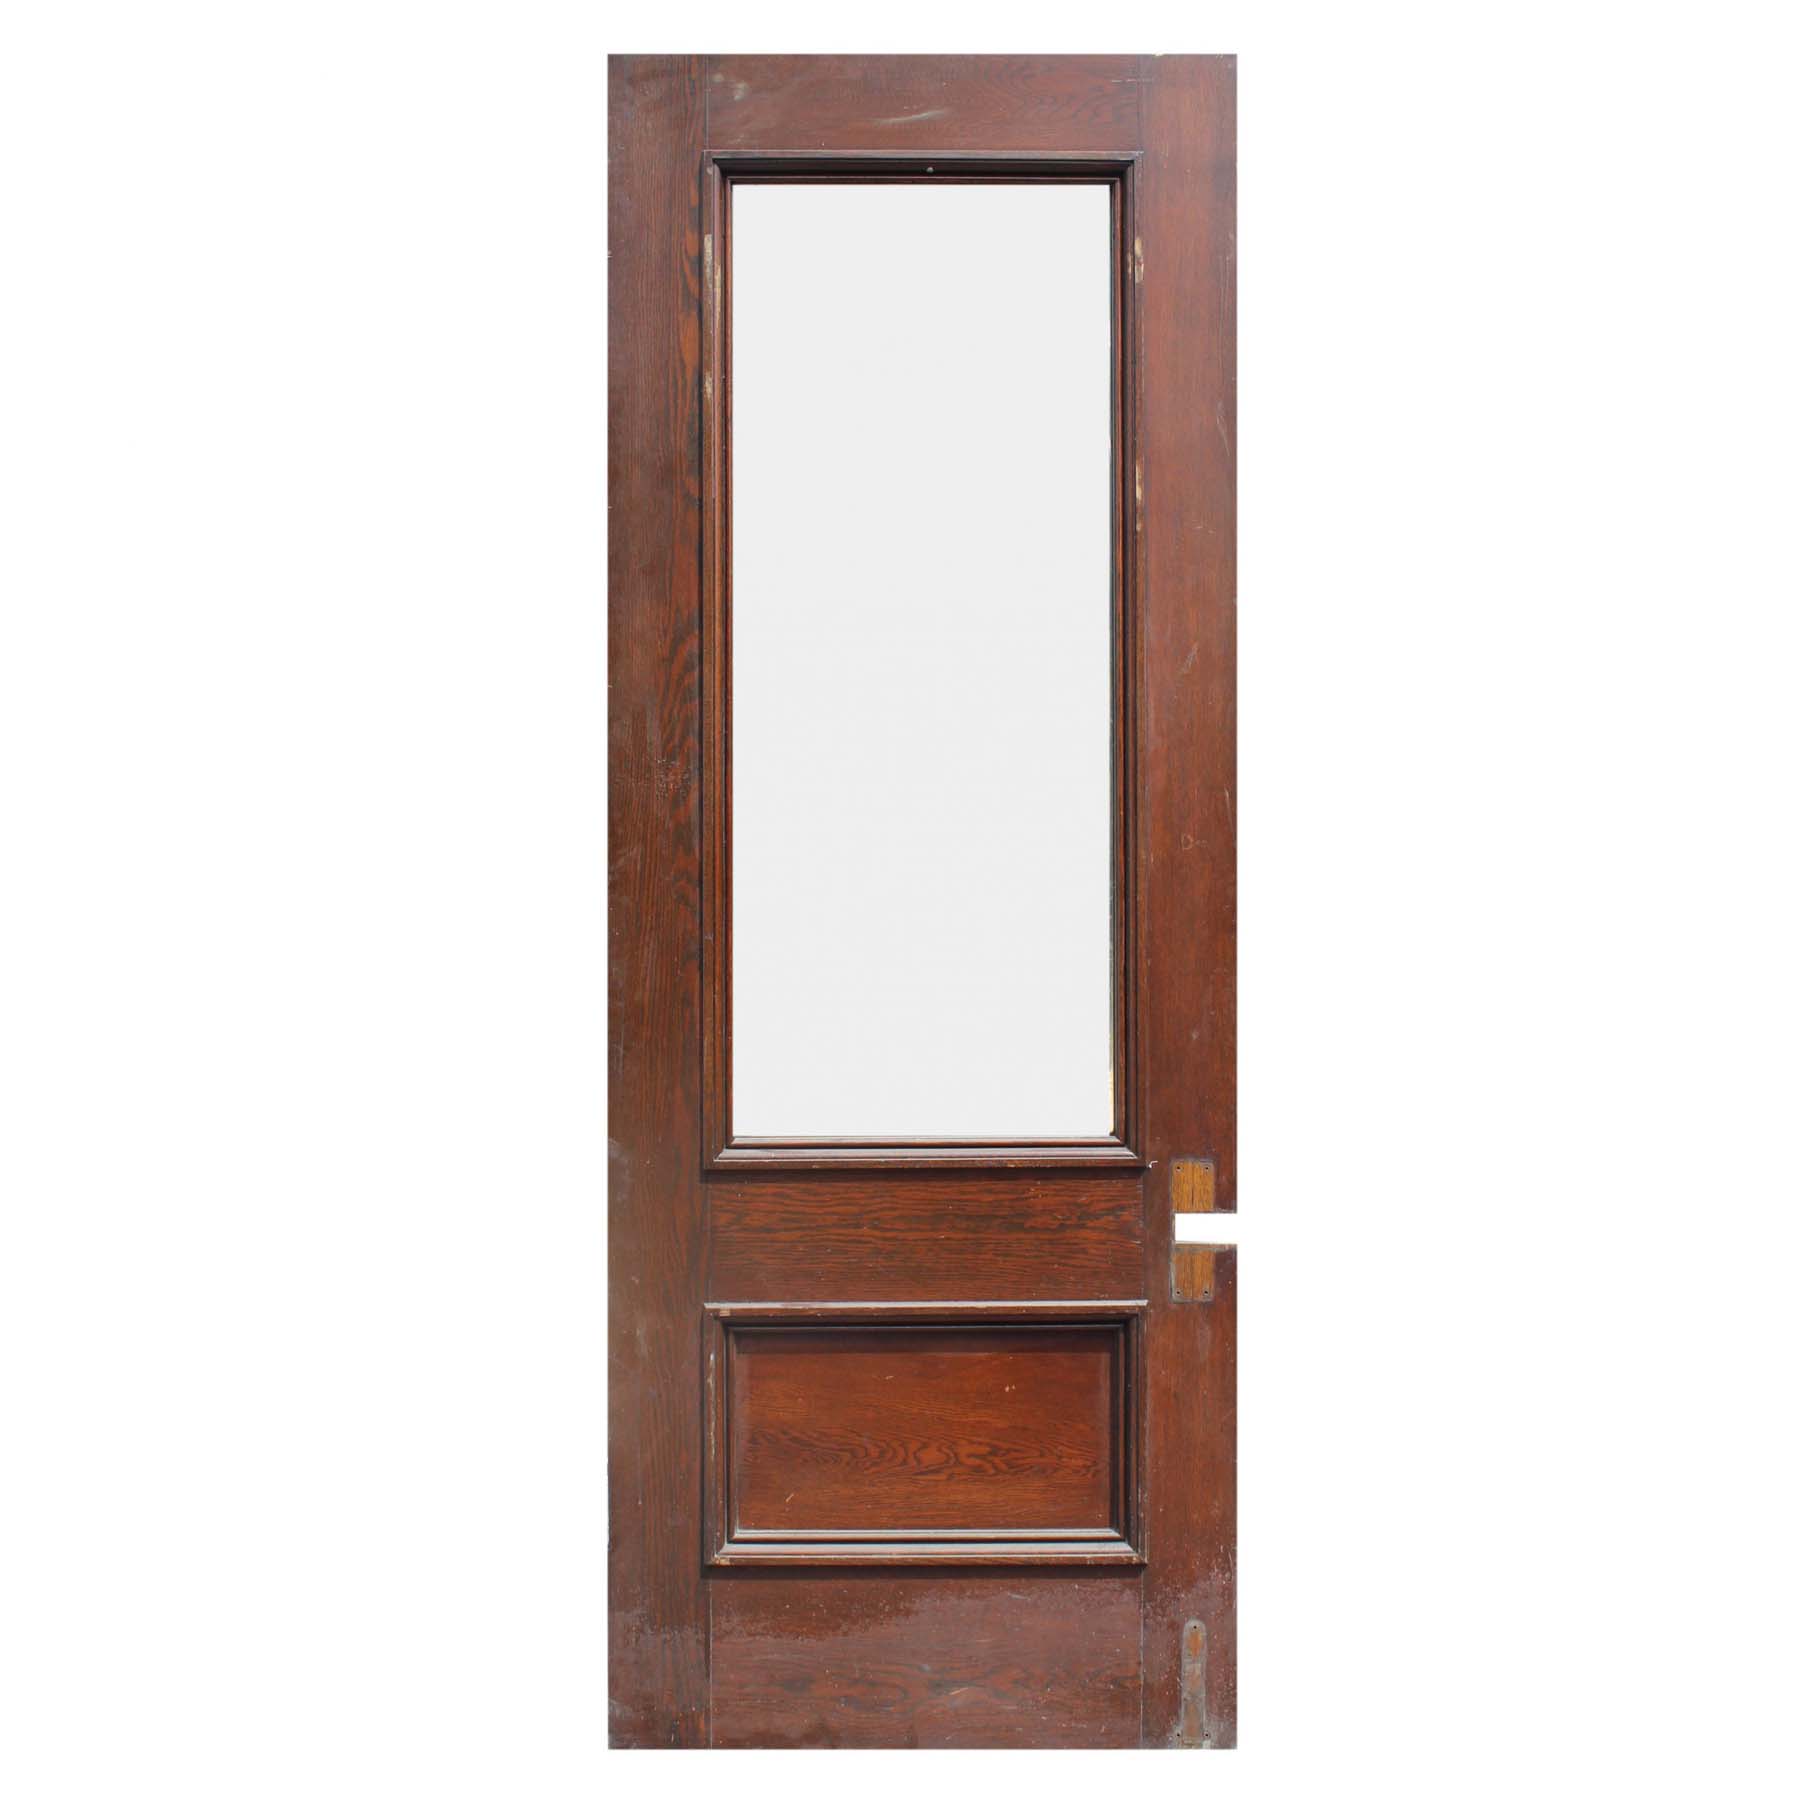 SOLD Salvaged 36” Oak Door with Glass-68032